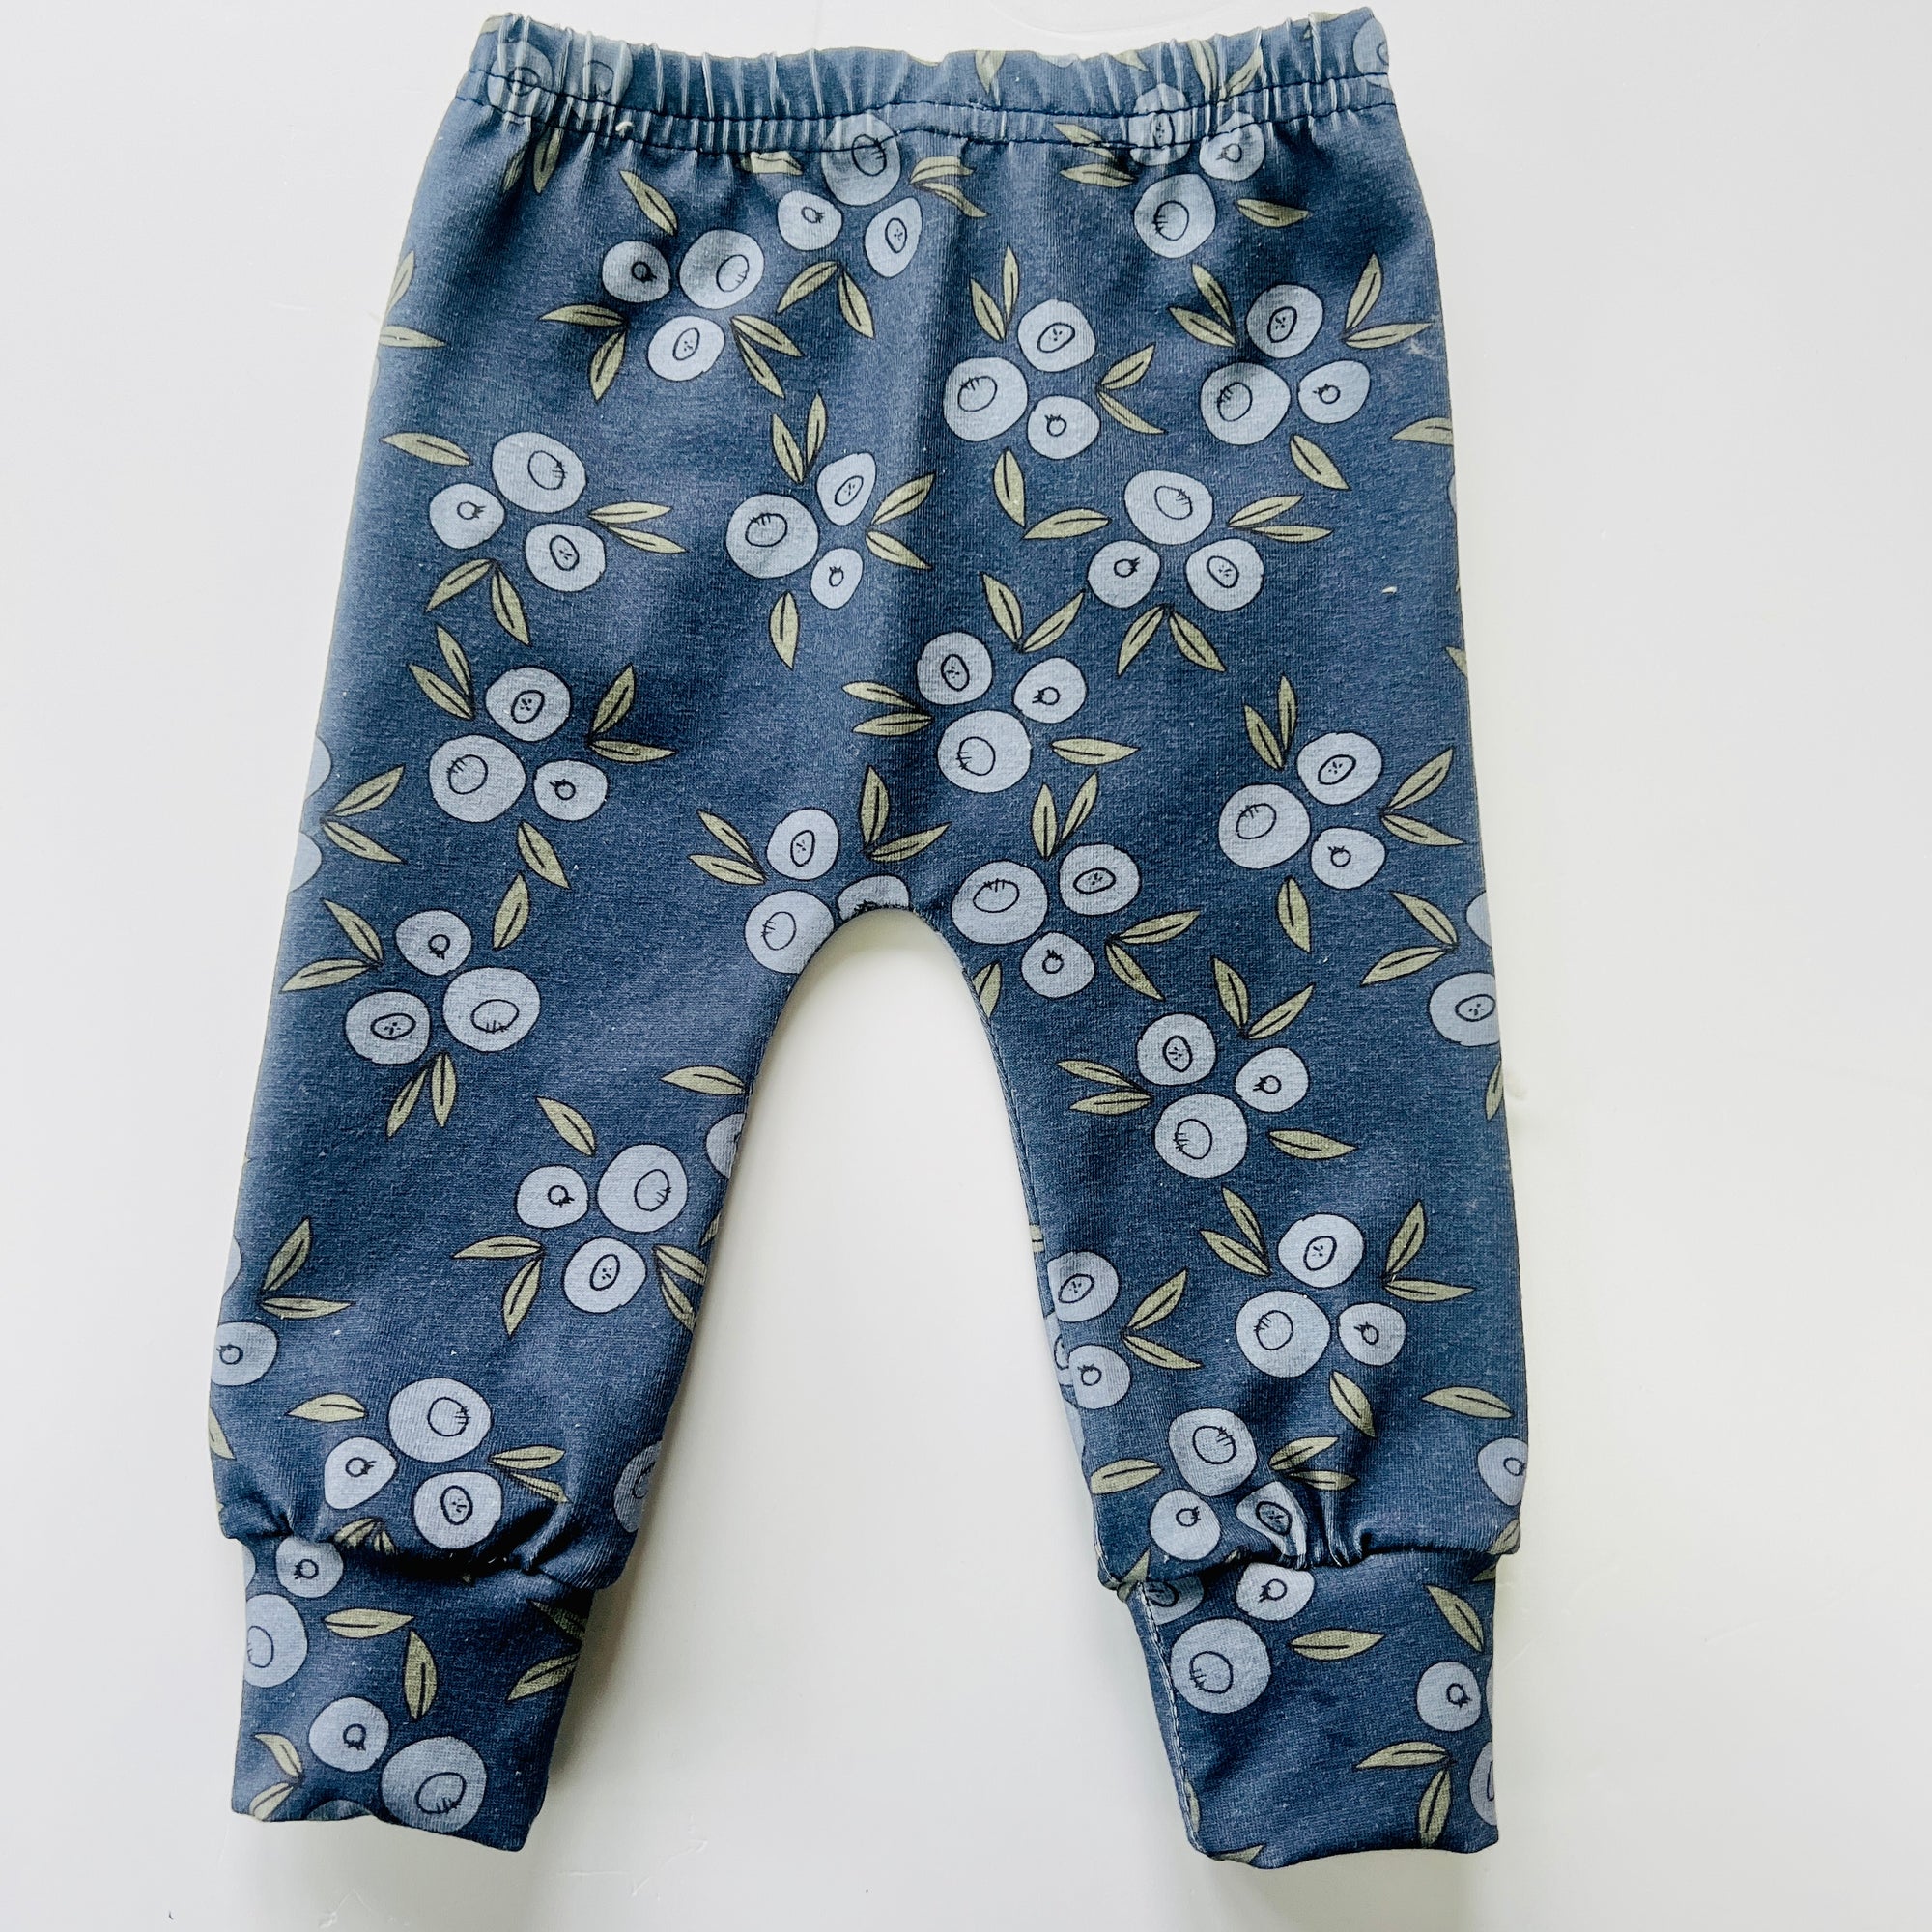 Eddie & Bee organic cotton leggings in Dark Blue “Blueberries" print.